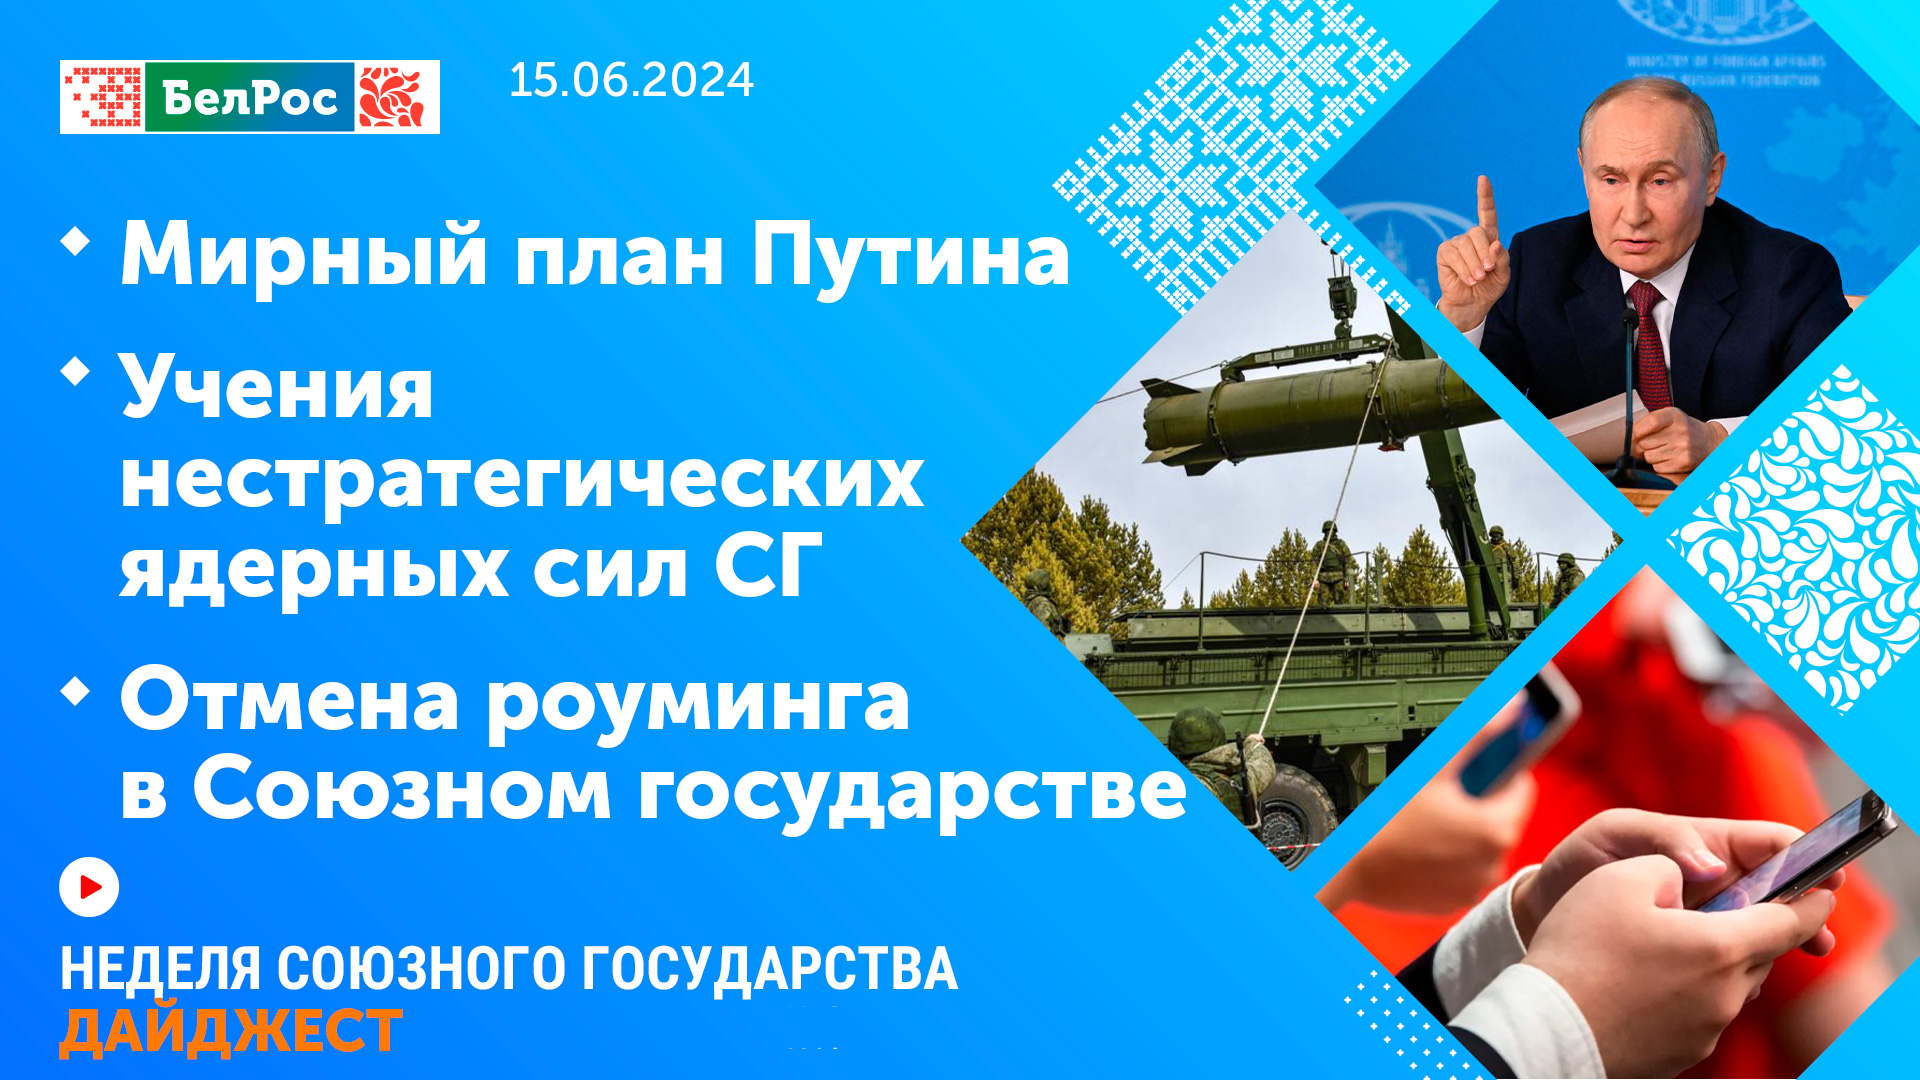 Неделя СГ: Мирный план Путина / Учения нестратегических ядерных сил СГ / Отмена роуминга в СГ